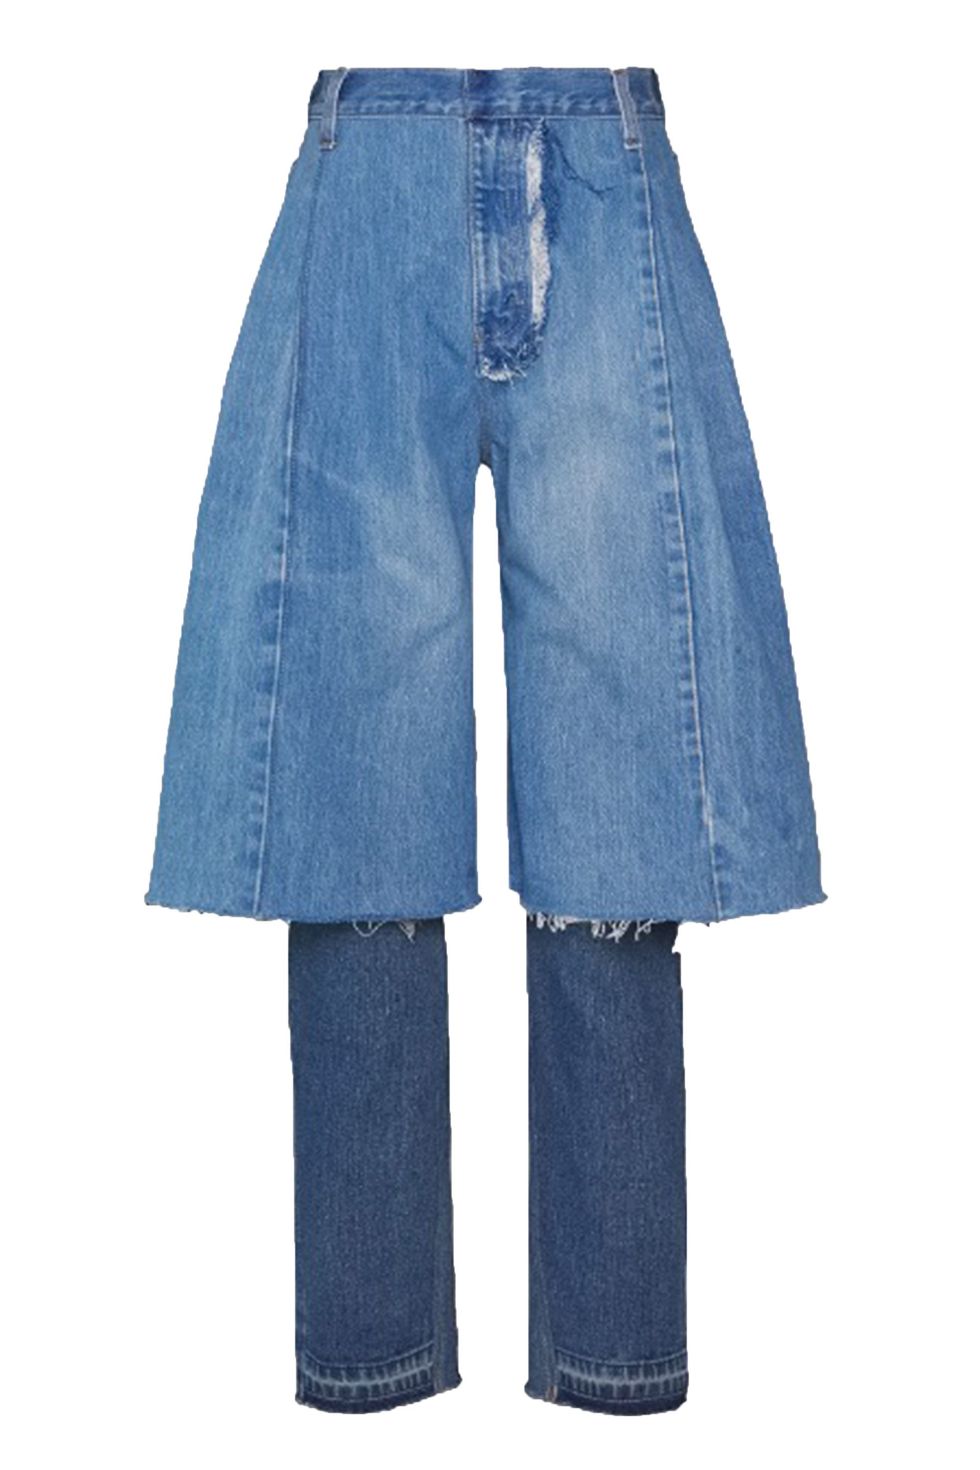 Ksenia Schnaider  reworked jeans